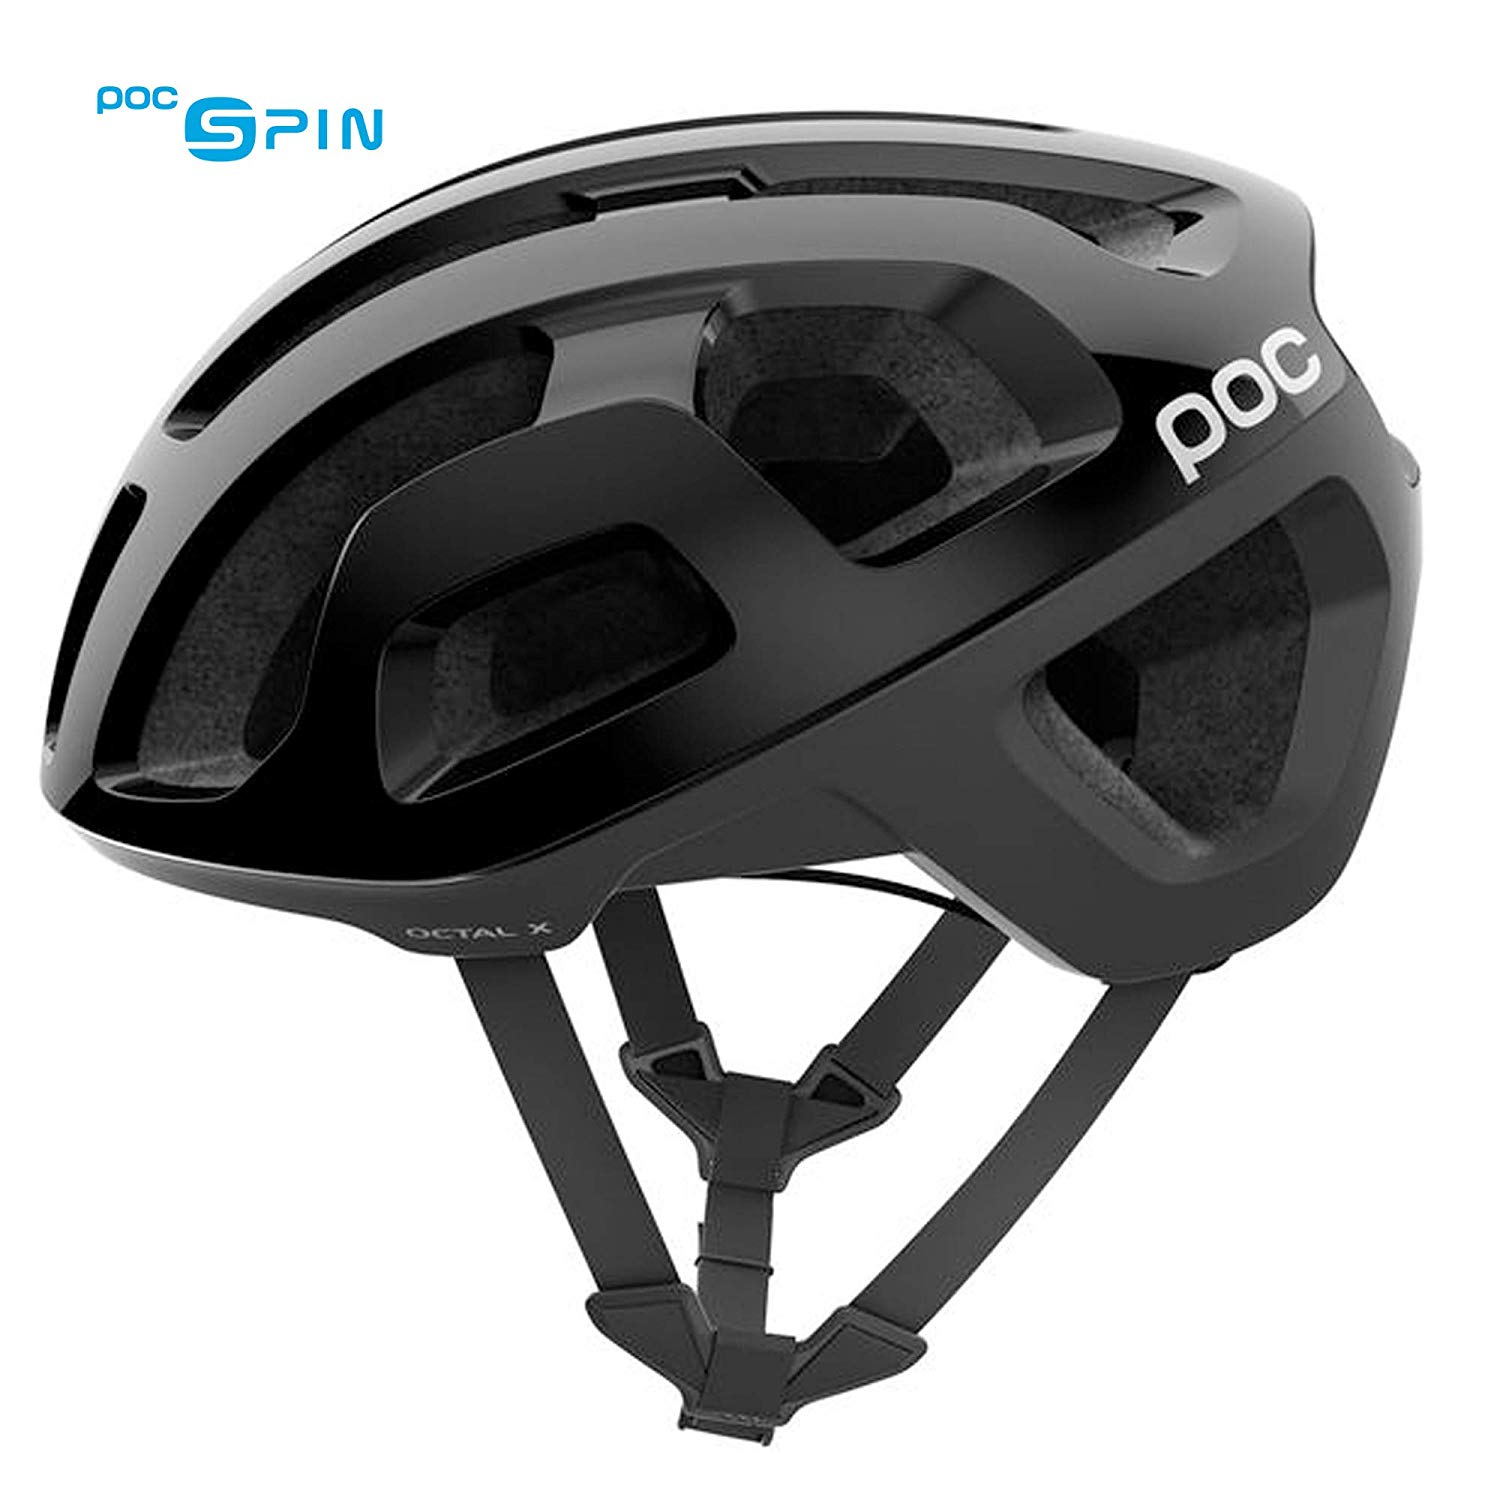 POC Octal X Spin,  Bike Helmet